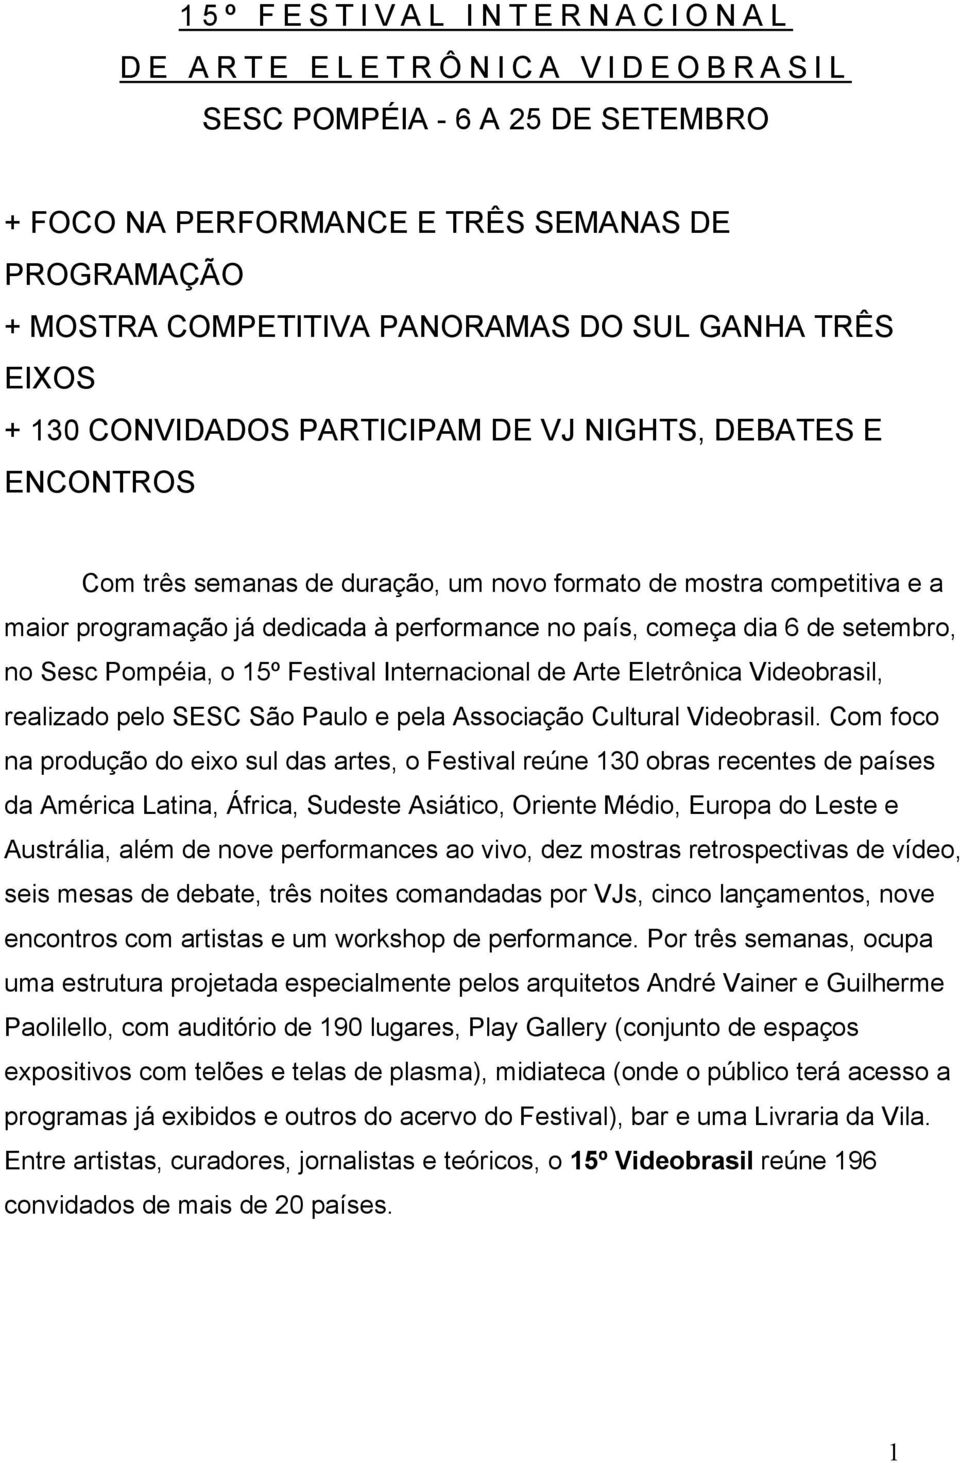 dedicada à performance no país, começa dia 6 de setembro, no Sesc Pompéia, o 15º Festival Internacional de Arte Eletrônica Videobrasil, realizado pelo SESC São Paulo e pela Associação Cultural